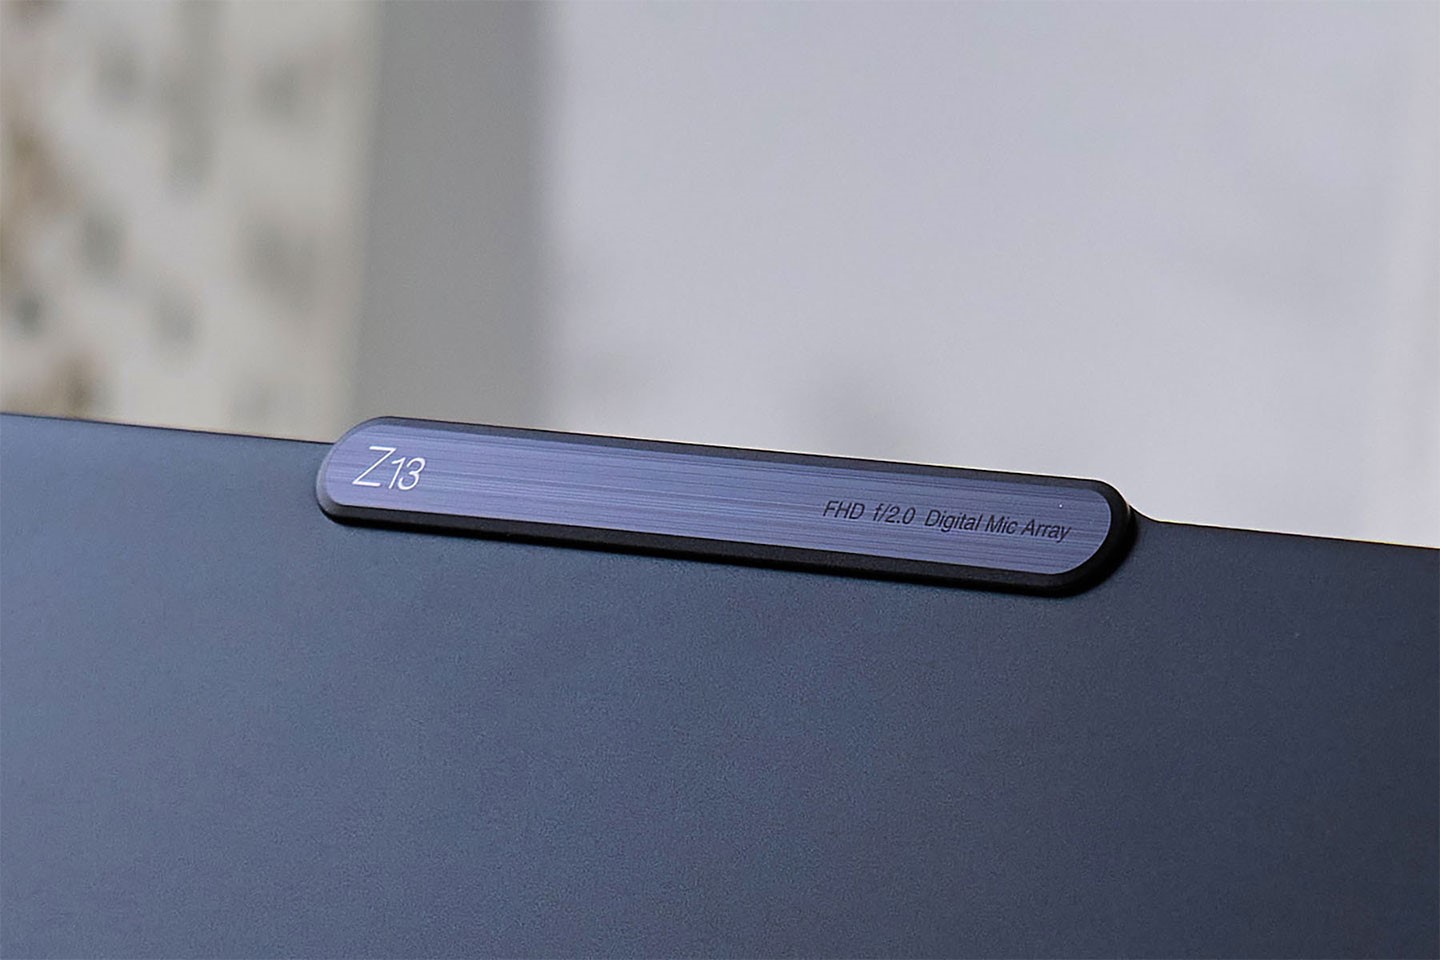 由於 ThinkPad Z13 的網路攝影機模組設計略突出於顯示器上方，因此在上蓋側也以銘牌形式秀出筆電型號與網路攝影機的規格。